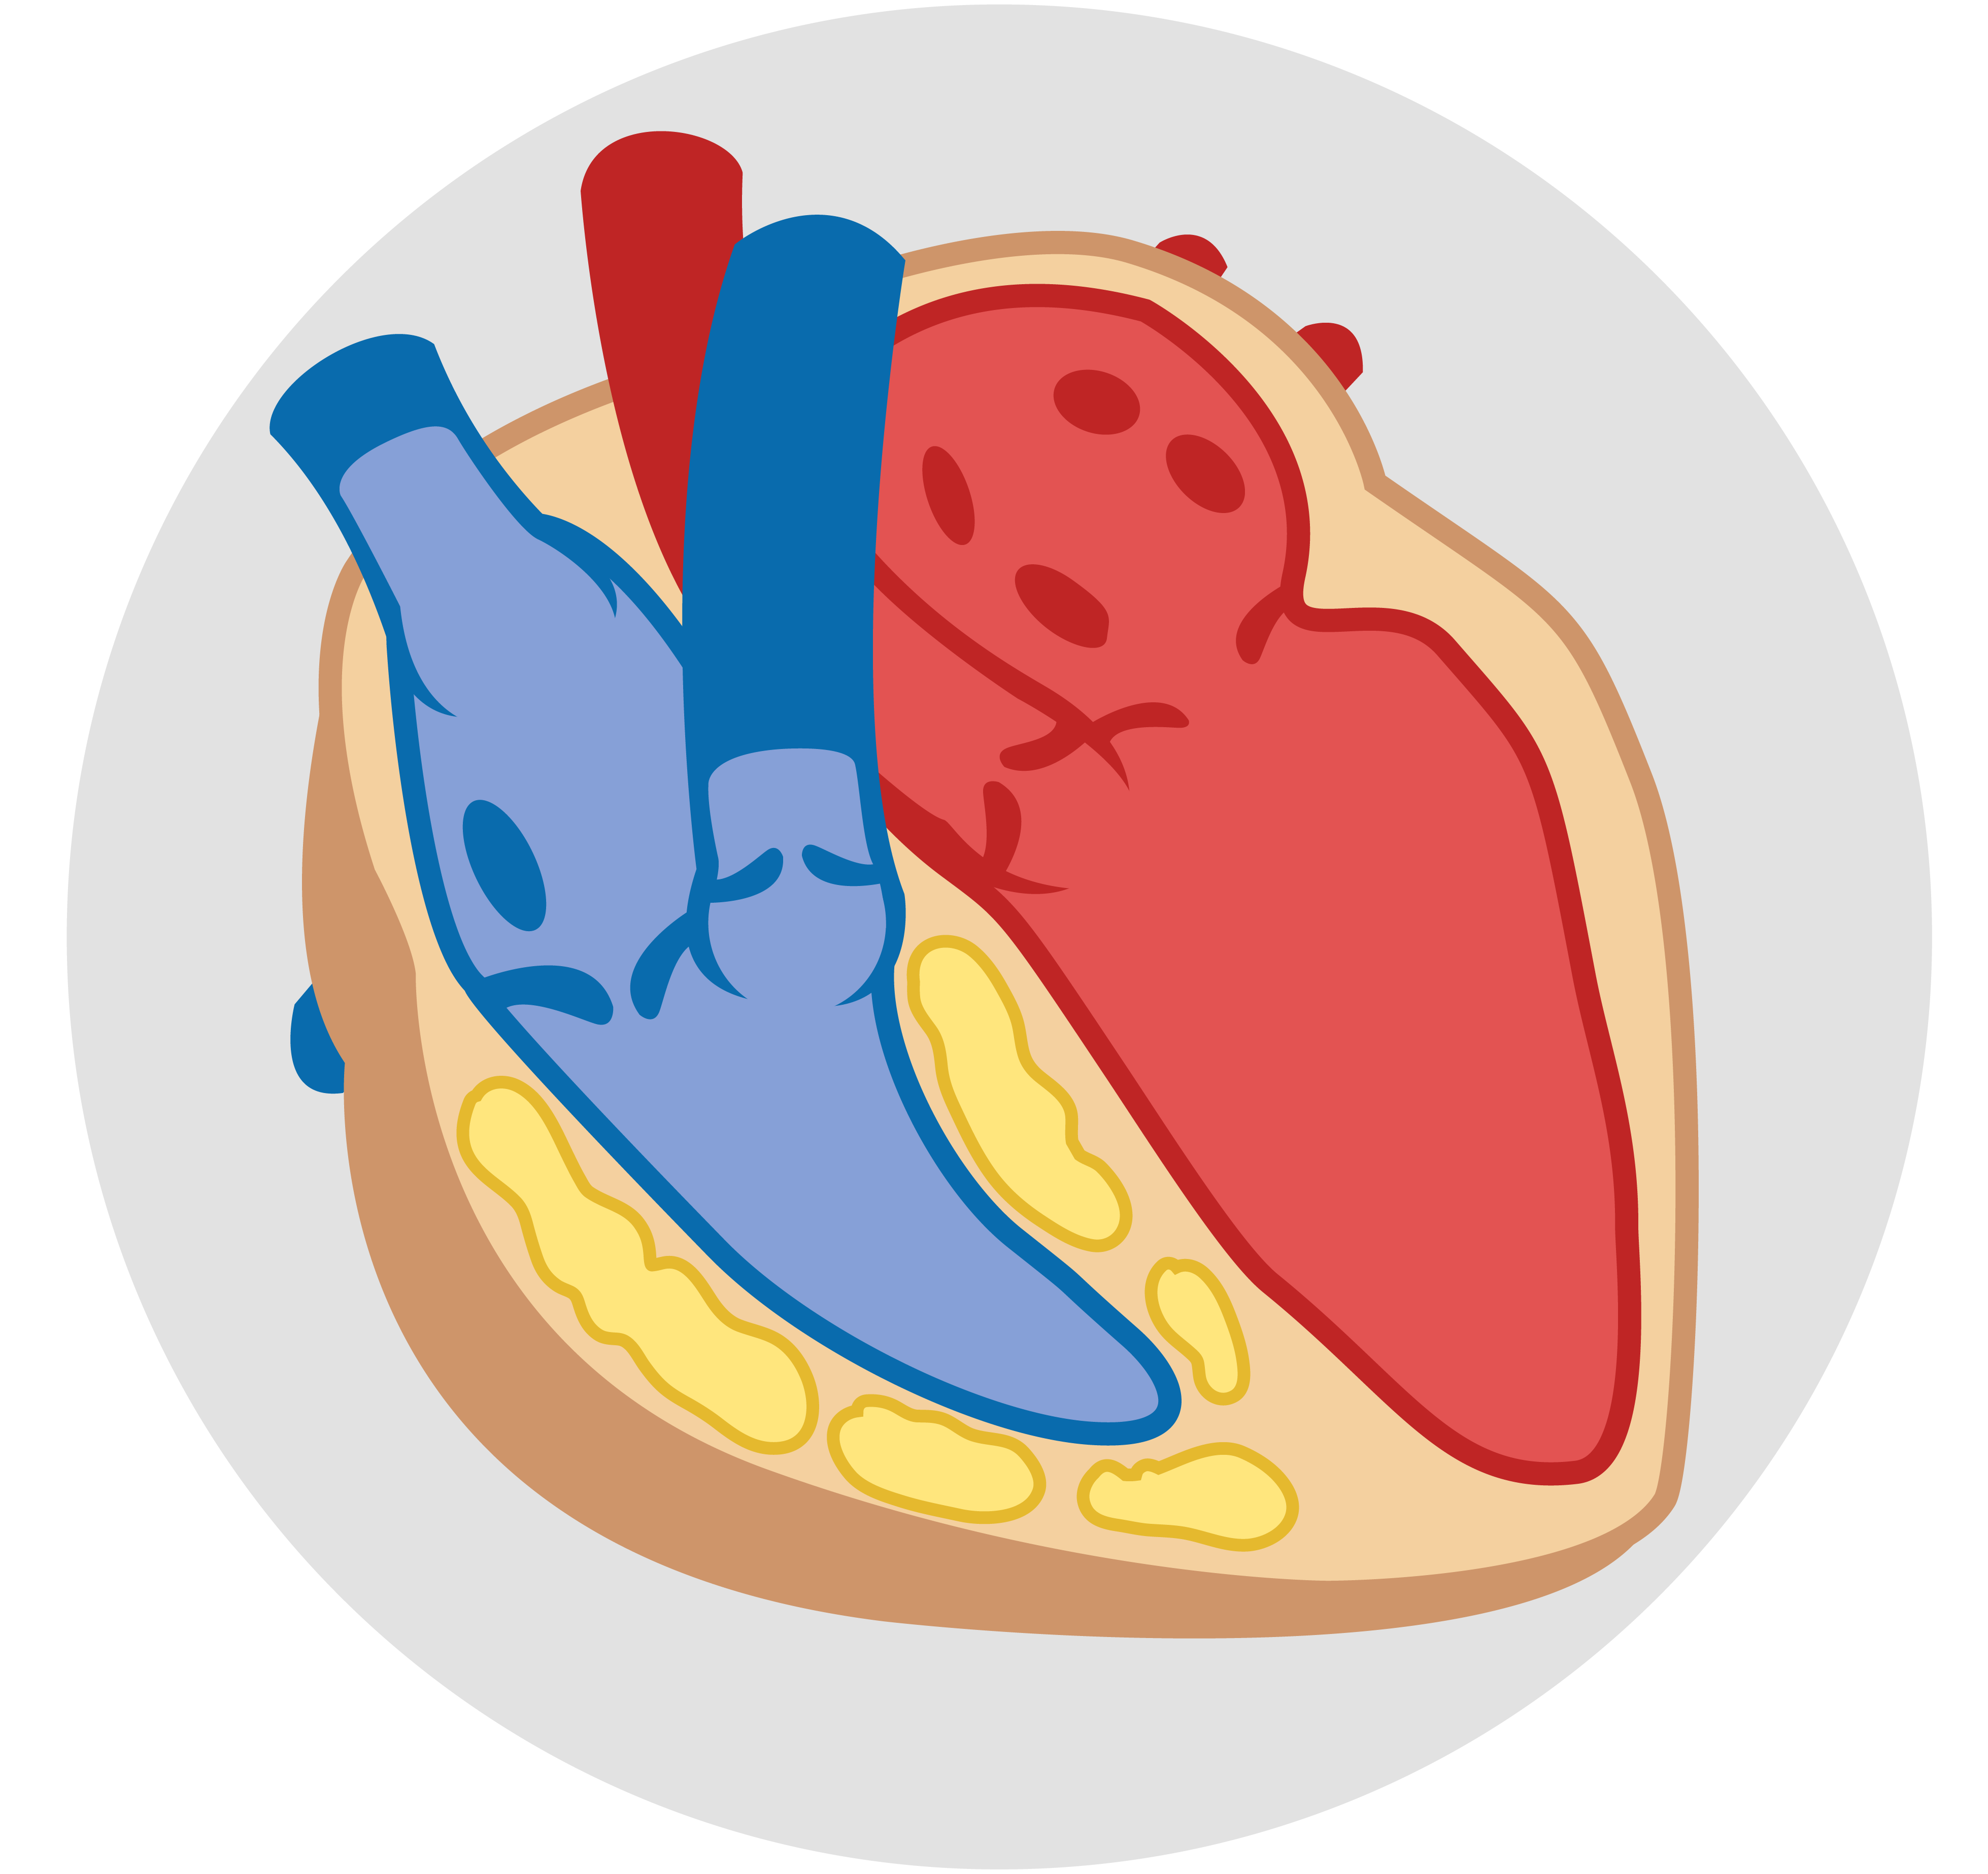 Miocardiopatía arritmogénica de ventrículo derecho